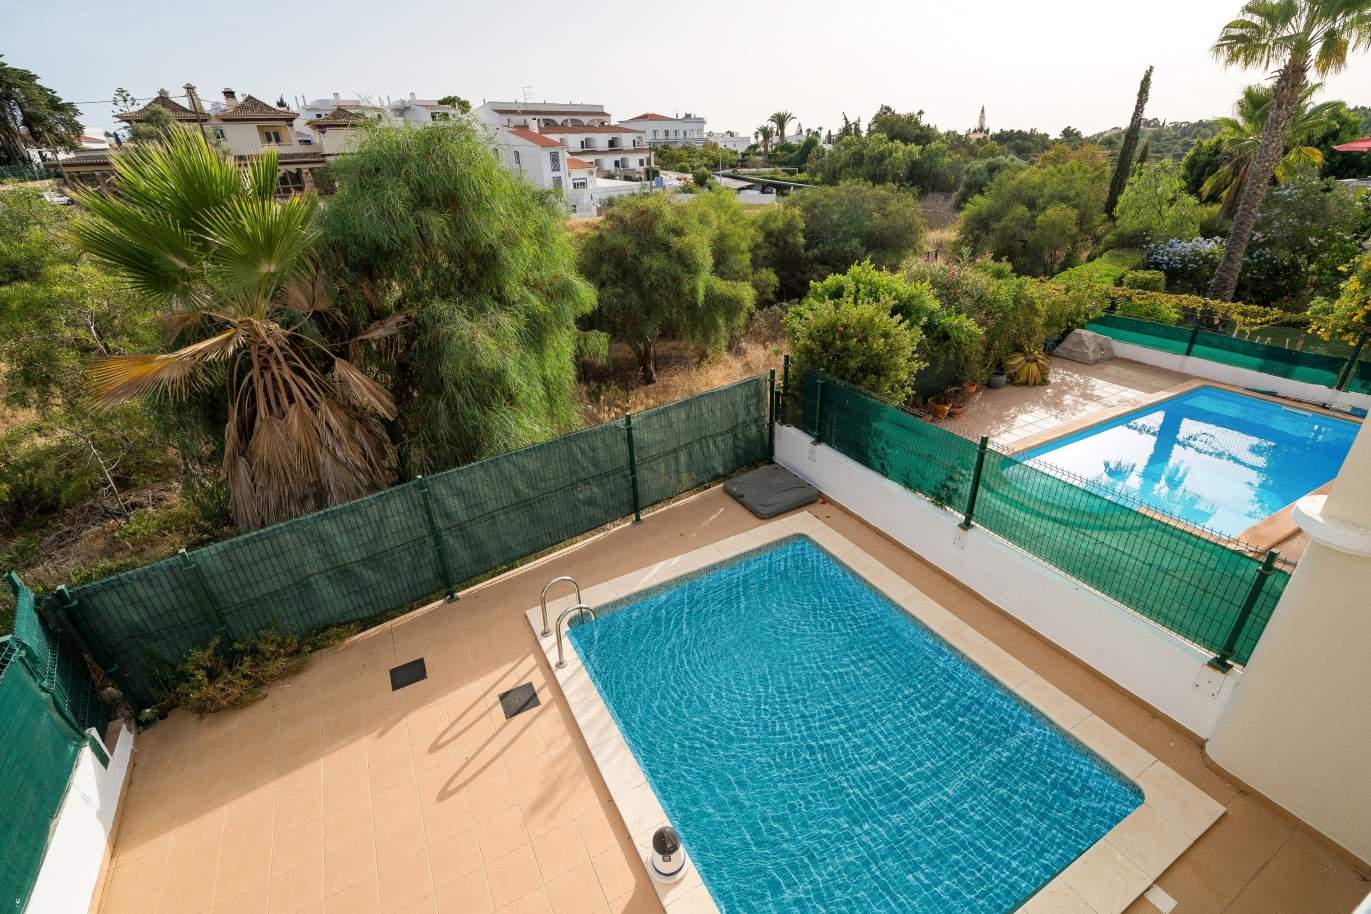 Moradia V2, com piscina, para venda, Carvoeiro, Algarve_149487